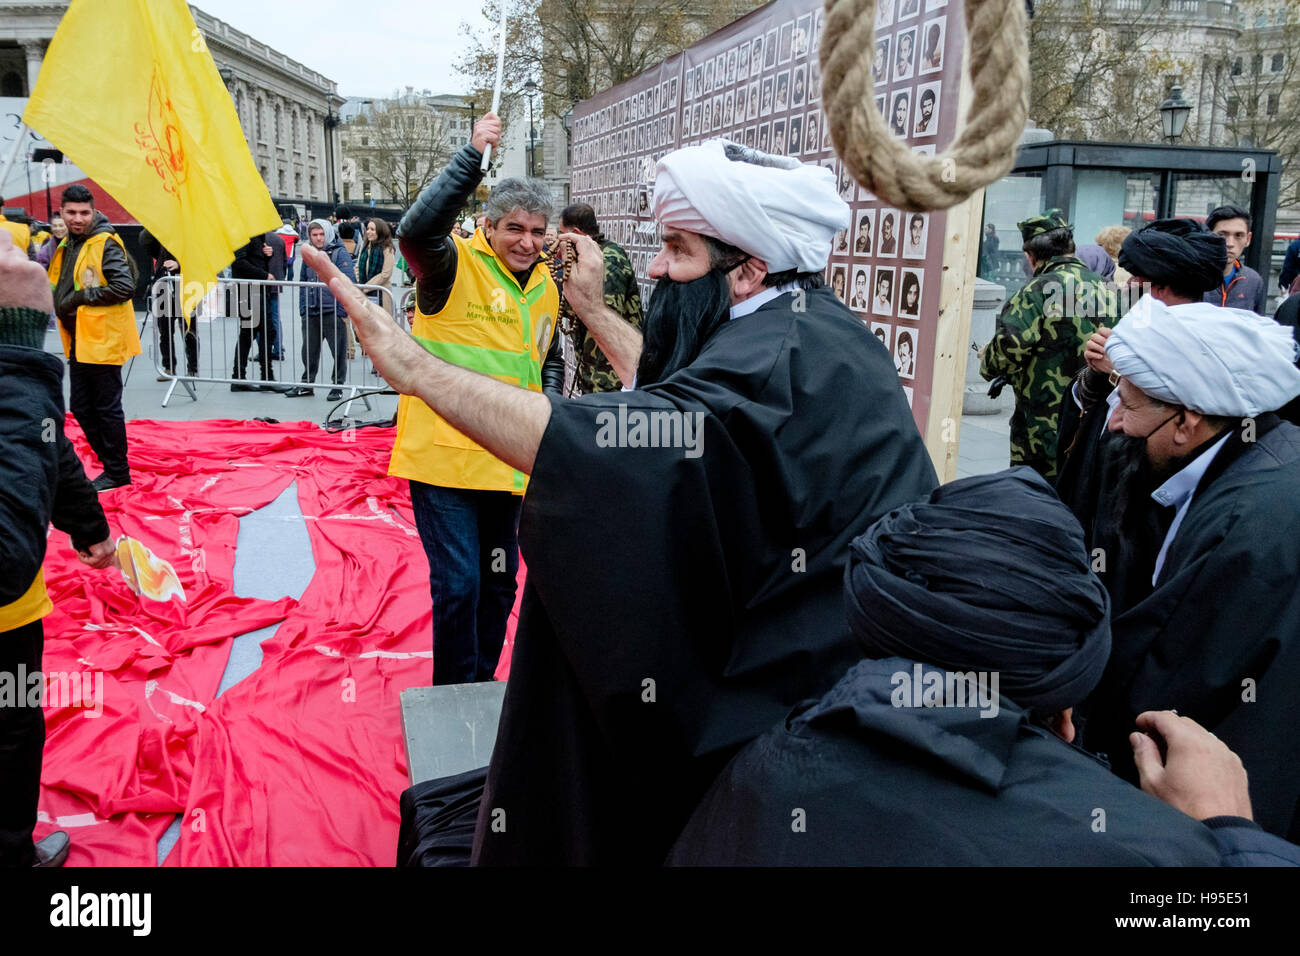 Manifestanti iraniani protestare contro la detenzione e l'uccisione di prigionieri politici da parte delle autorità in Iran. Londra, Regno Unito. Foto Stock